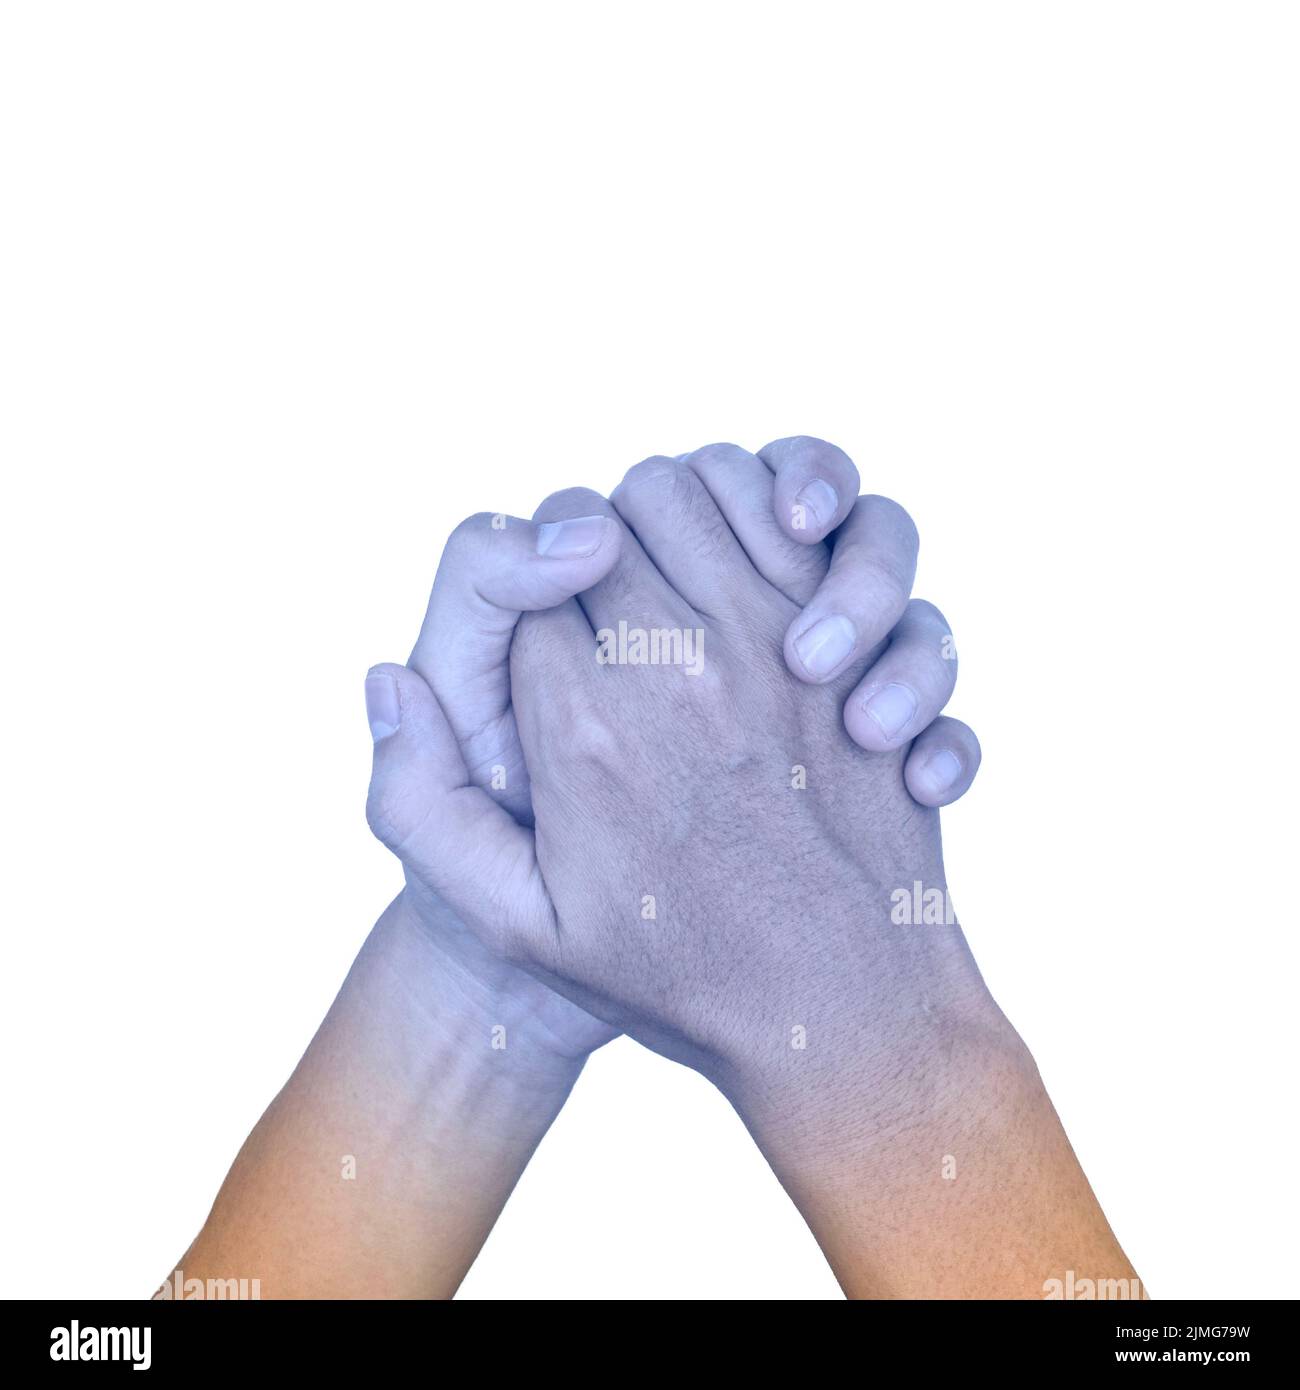 Les mains se sont jointes avec la couleur bleu clair du jeune homme asiatique. Concept de main froide et maladroite. Banque D'Images